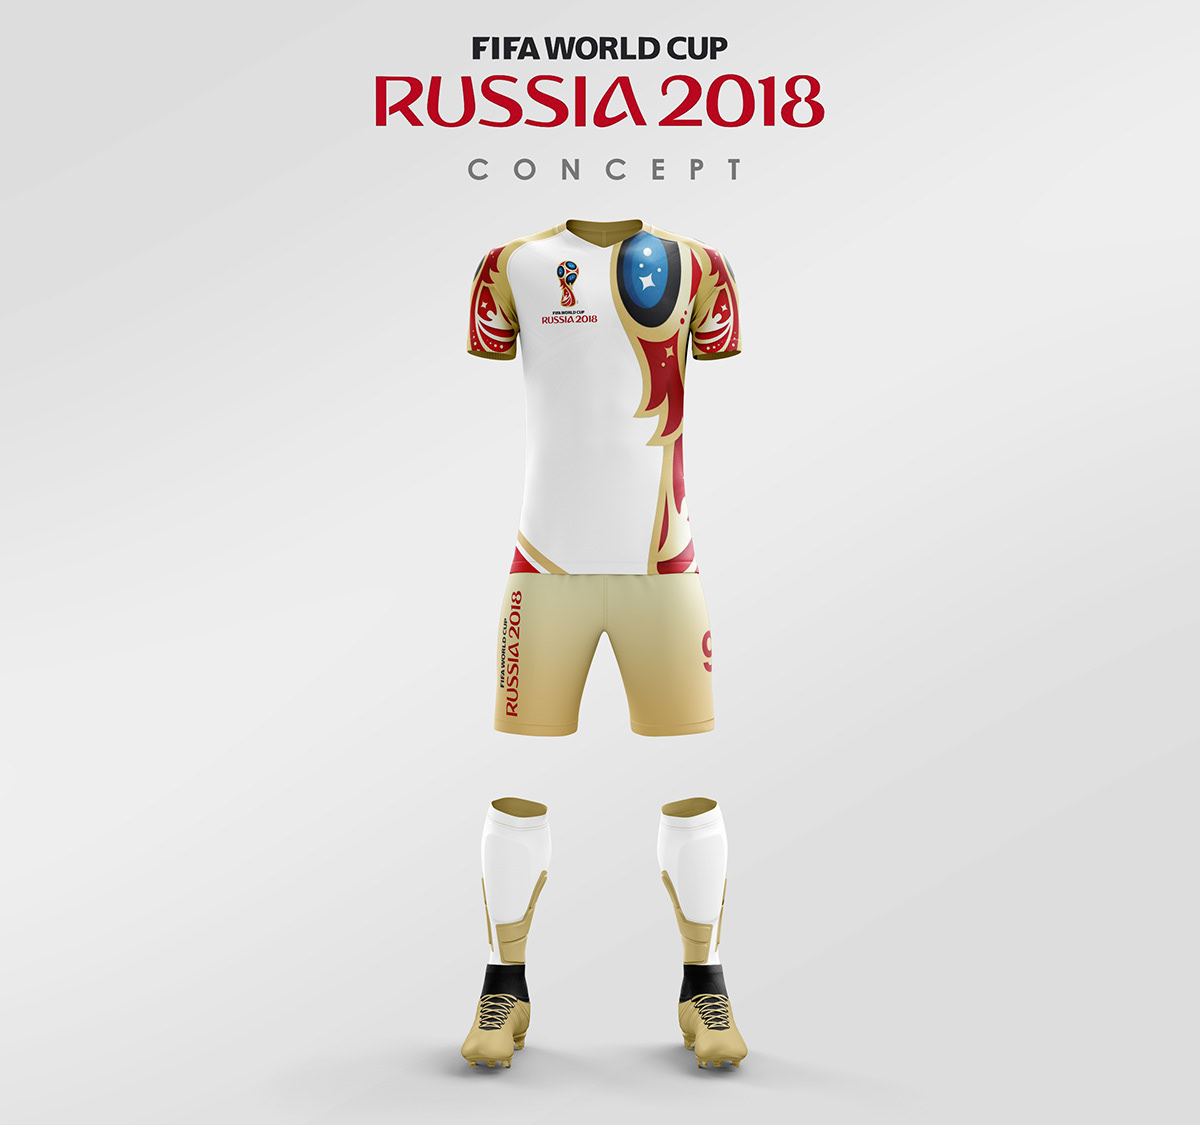 Russia 2018 world cup Russia 2018 concept Russia 2018 kit design concept